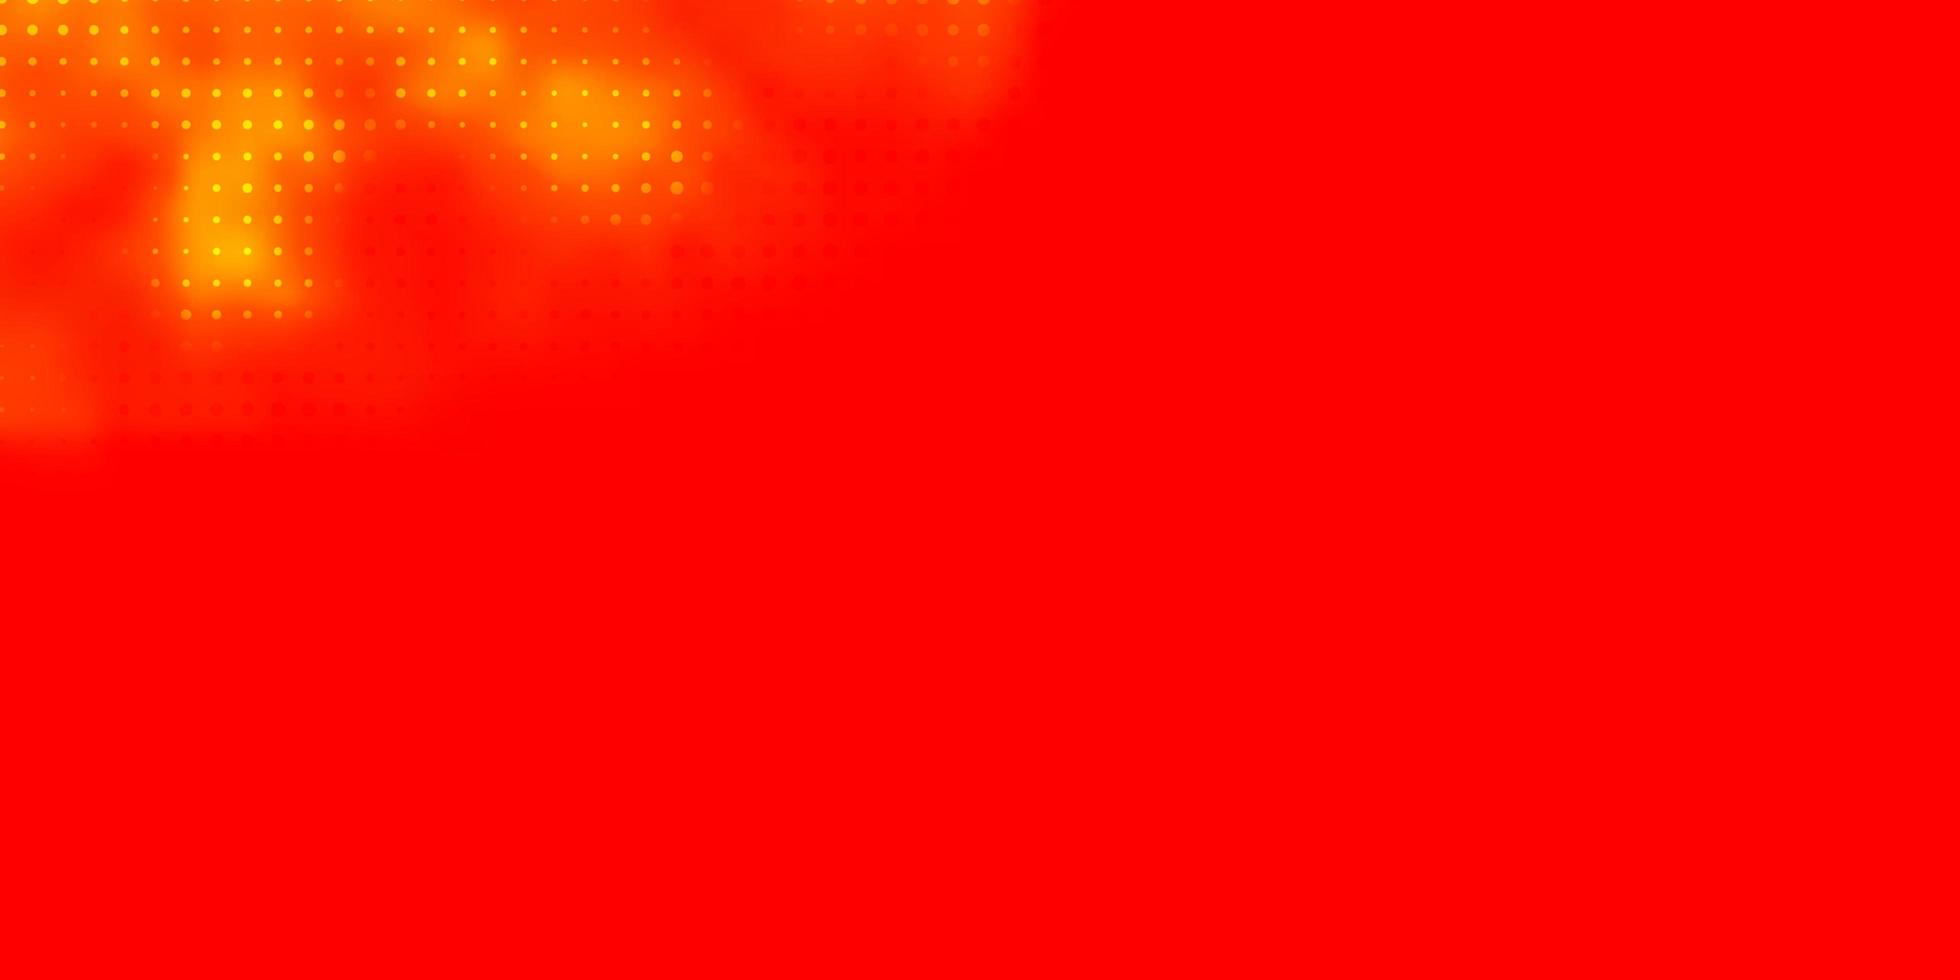 textura de vector amarillo rojo claro con discos ilustración abstracta con manchas de colores en el patrón de estilo de la naturaleza para sitios web